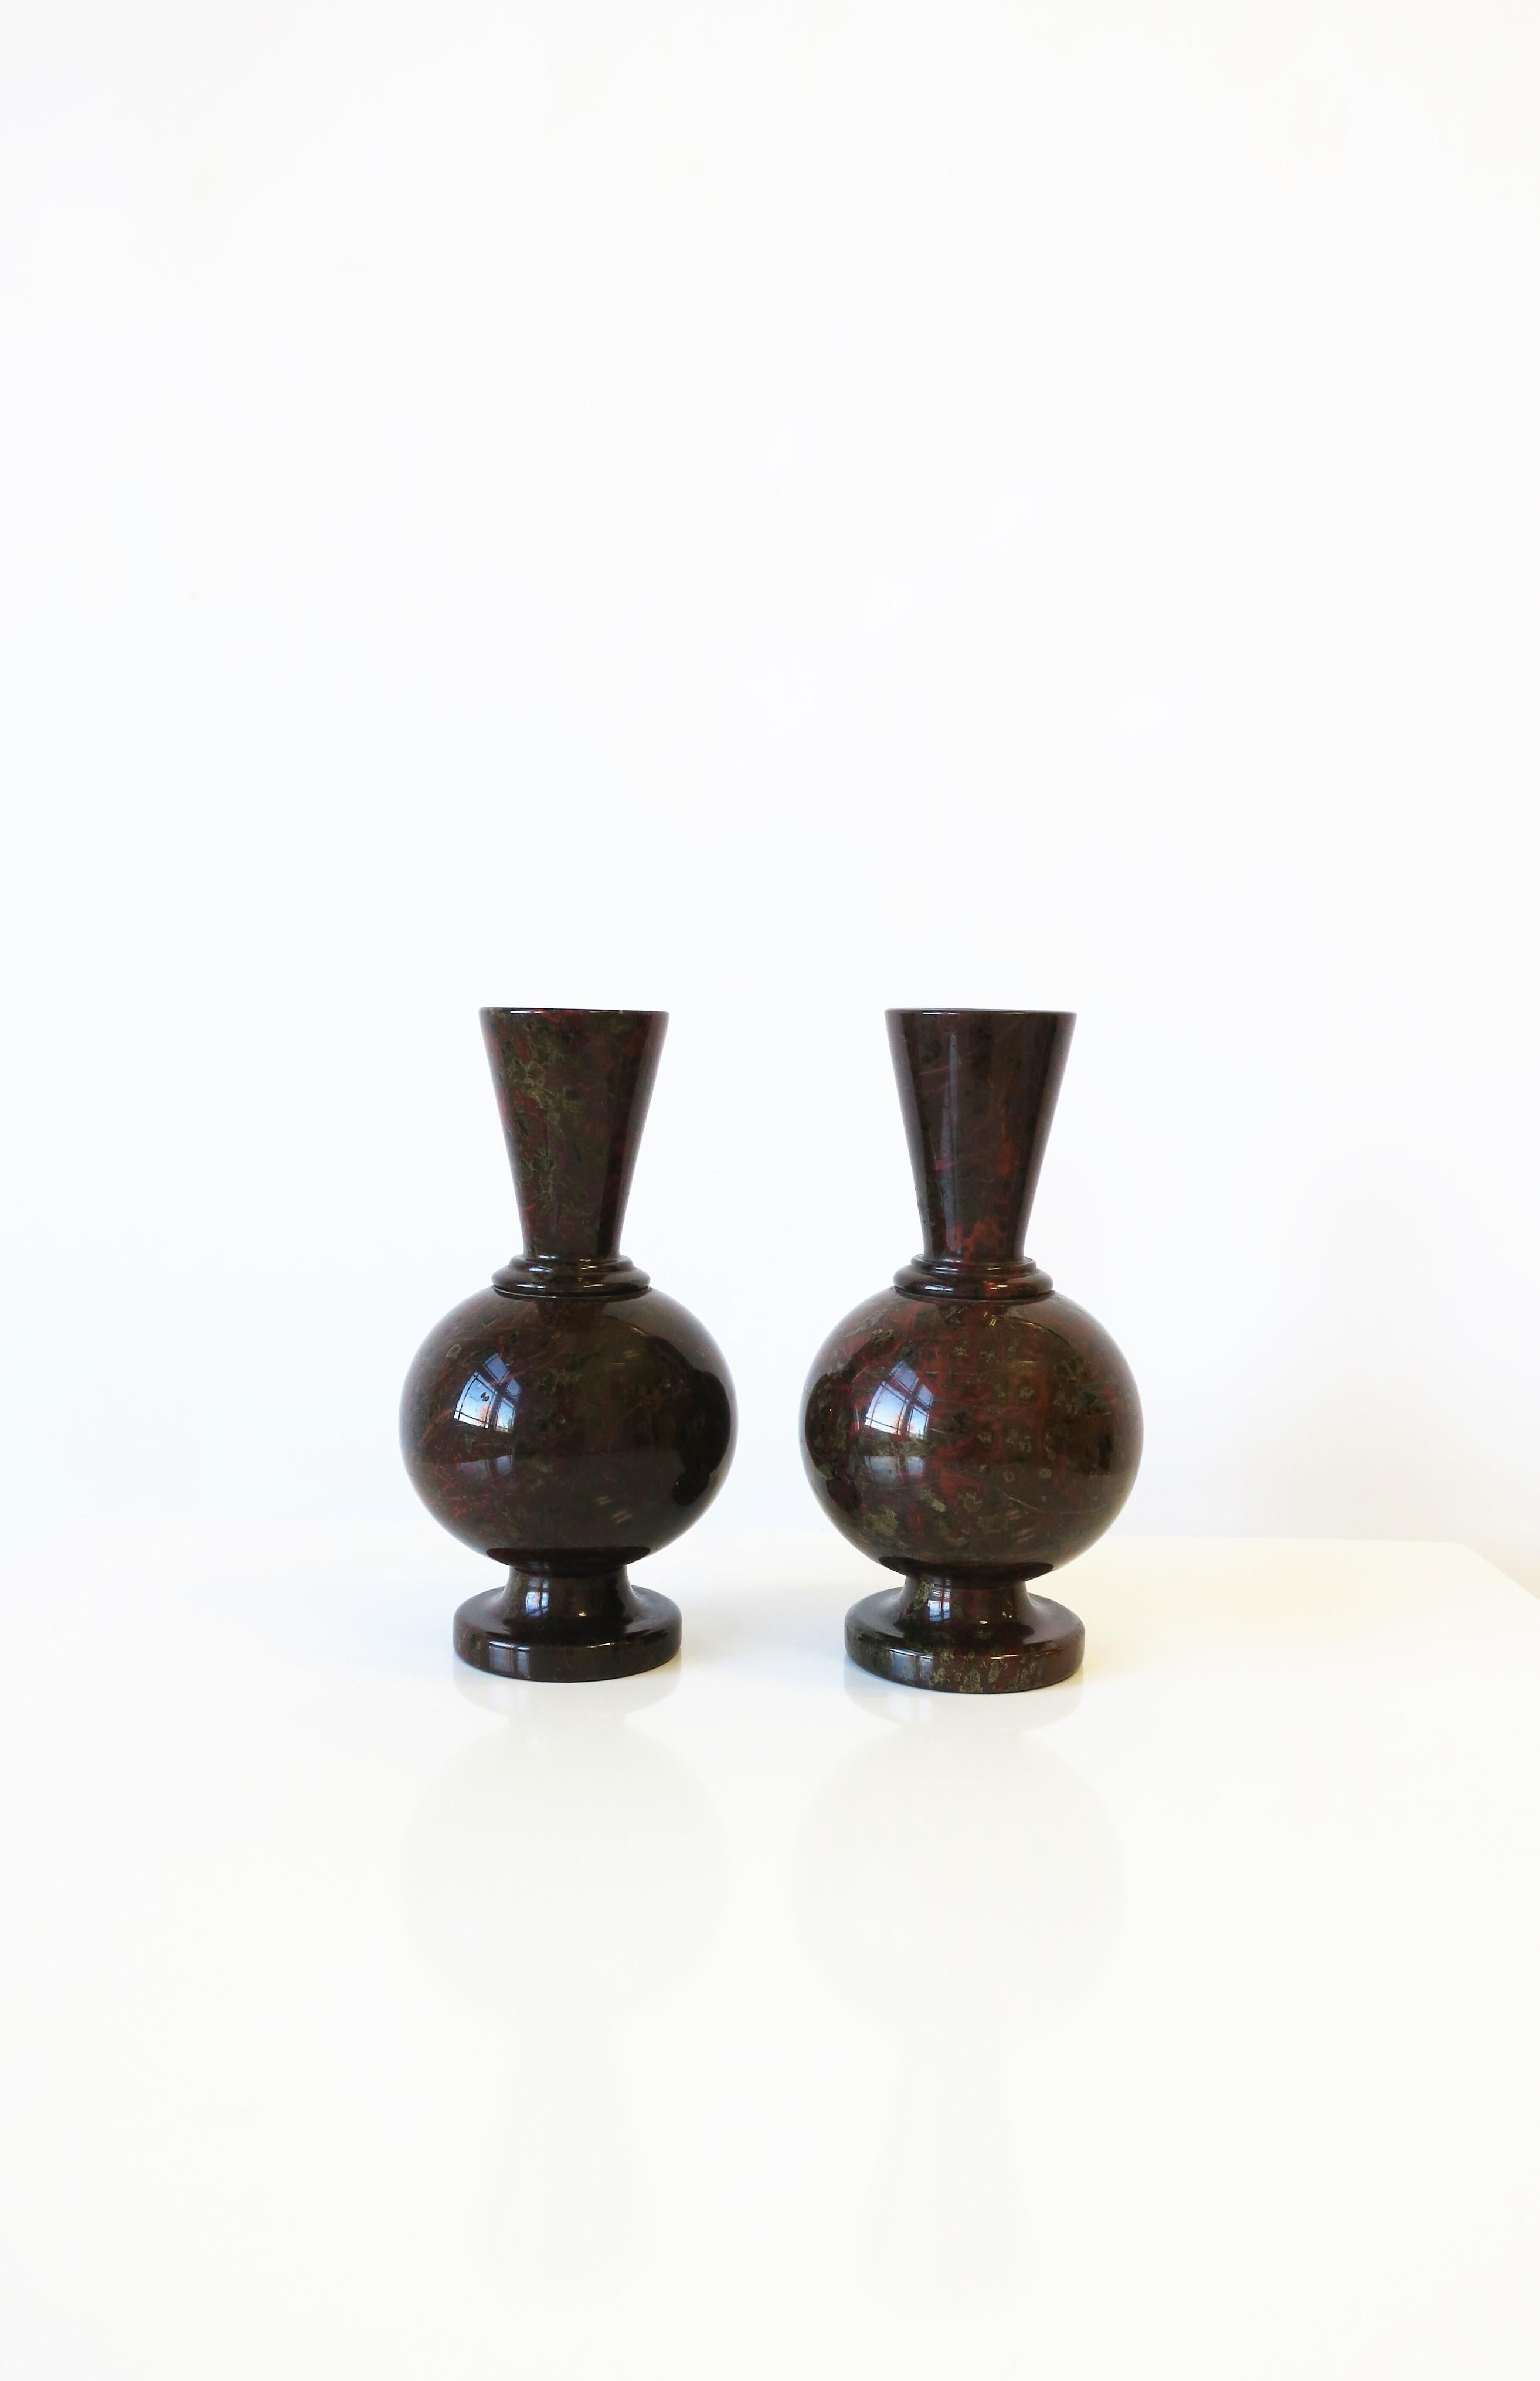 Ein wunderschönes, reichhaltiges Paar französischer Marmorsteinvasen im Art Déco-Stil, frühes 20. Jahrhundert, Frankreich. Marmor ist überwiegend ein dunkles Espressobraun mit ziegelroten, hellbraunen und grünen Farbtönen, glatt poliert. Jede Vase